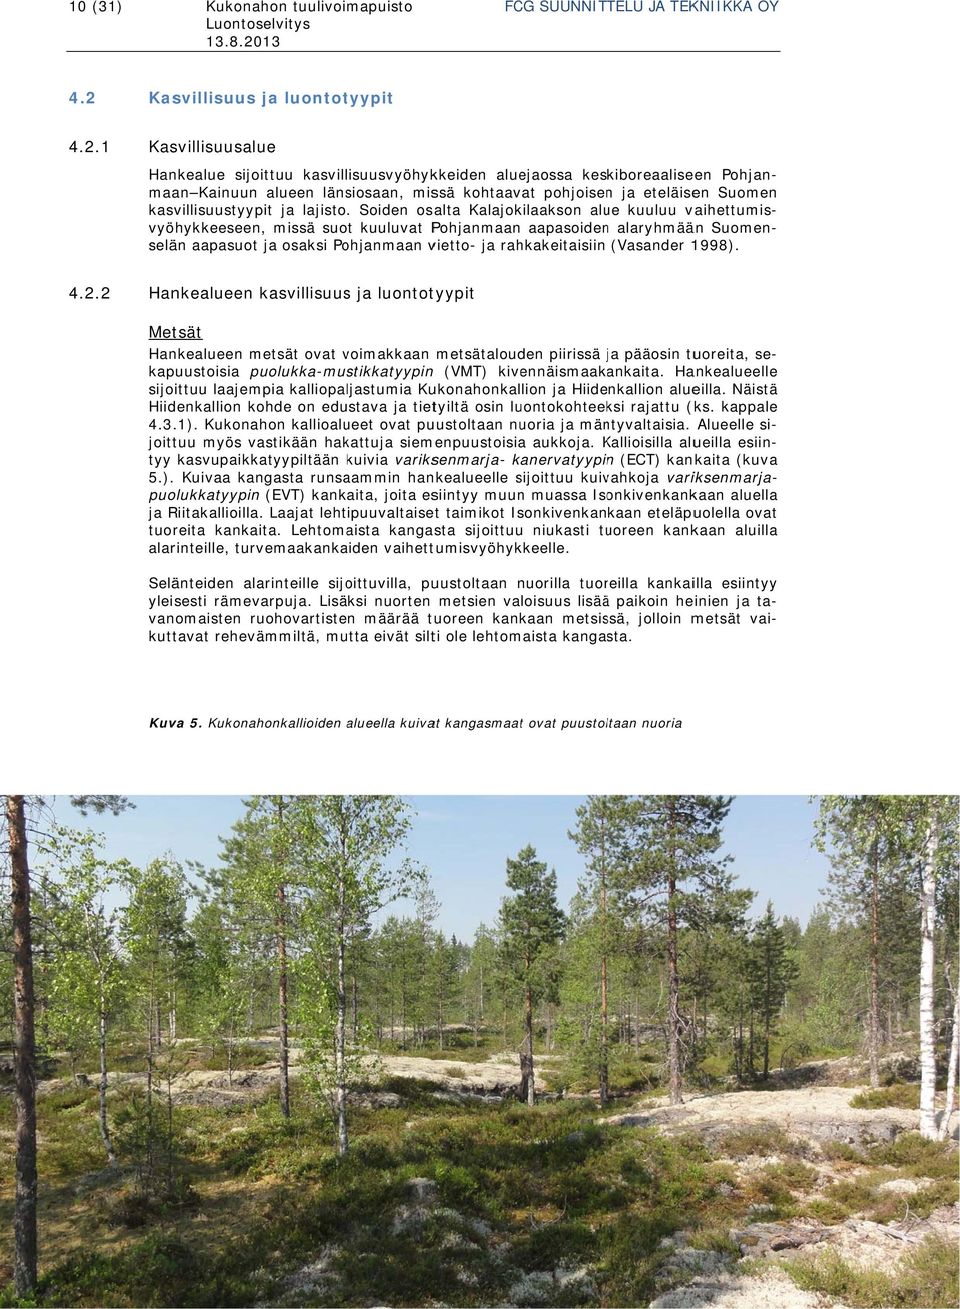 1 Kasvillisuusalue Hankealue sijoittuu kasvillisuusvyöhykkeiden aluejaossa keskiboreaaliseen Pohjan- Suomen maan Kainuun alueen länsiosaan, missä kohtaavat pohjoisenn ja eteläisen kasvillisuustyypit